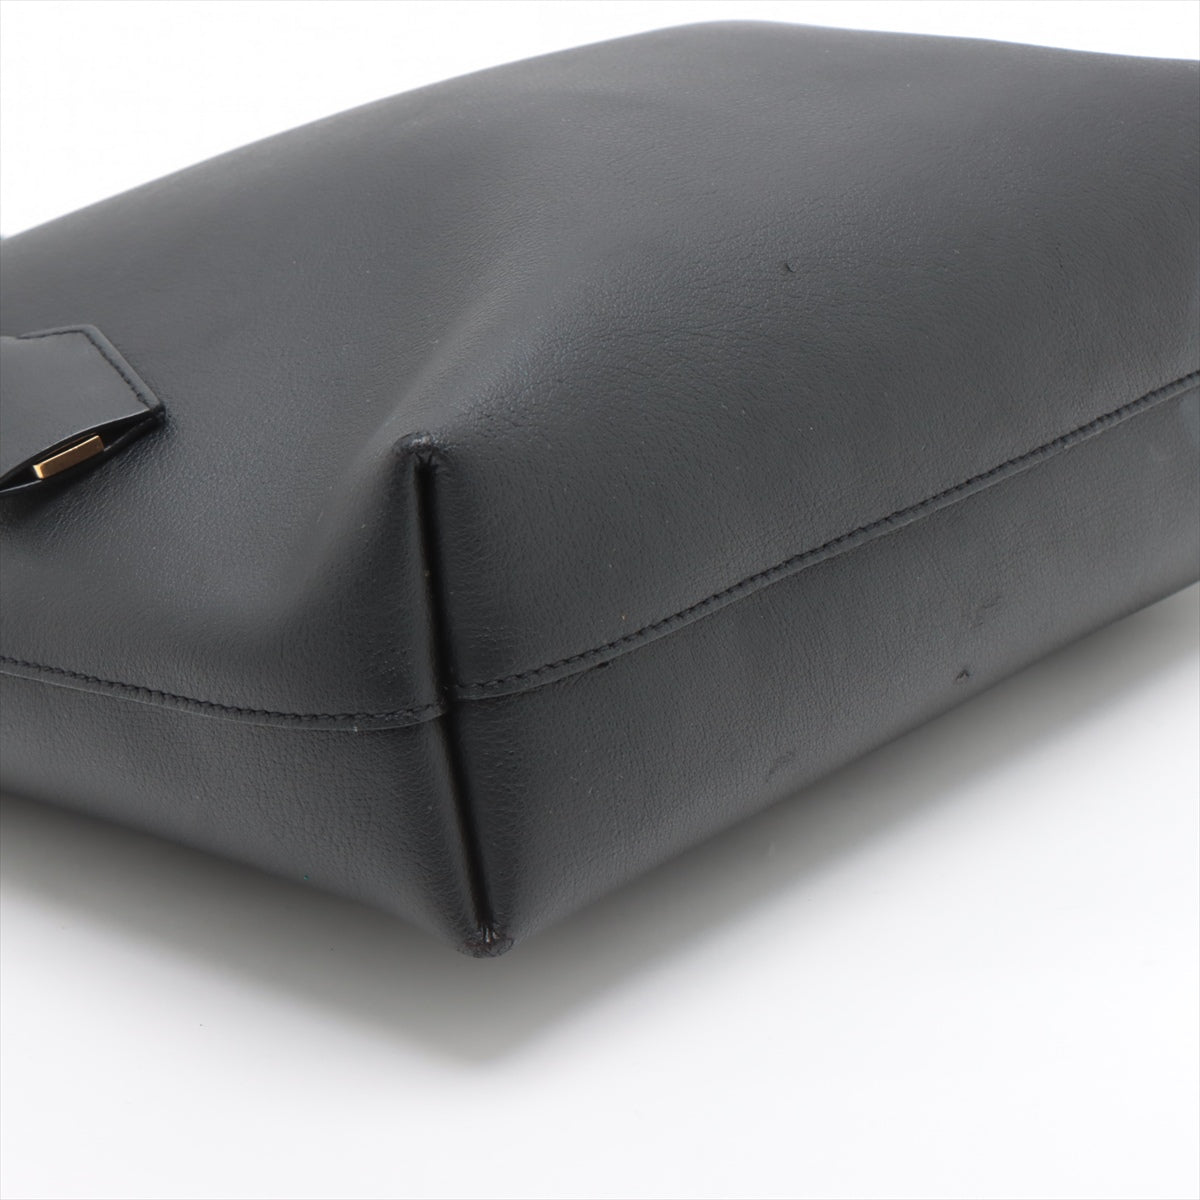 Saint Laurent Paris Toy Shopping Leather Tote bag Black 600307